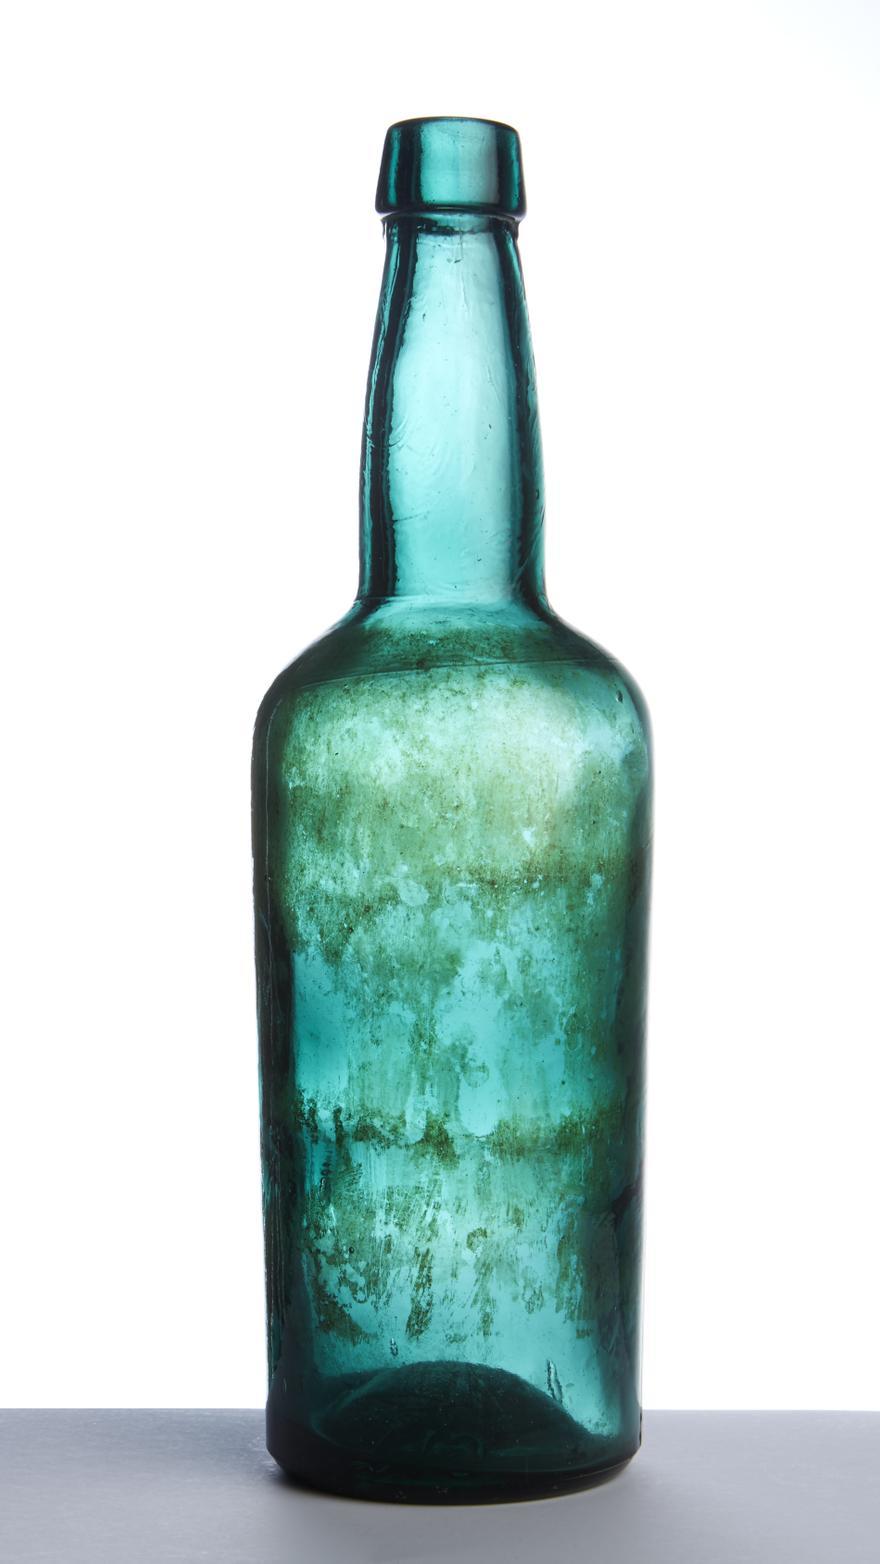 Botella de sidra de la F�brica de vidrios La Industria de Gijon Xix�n 2.jpg